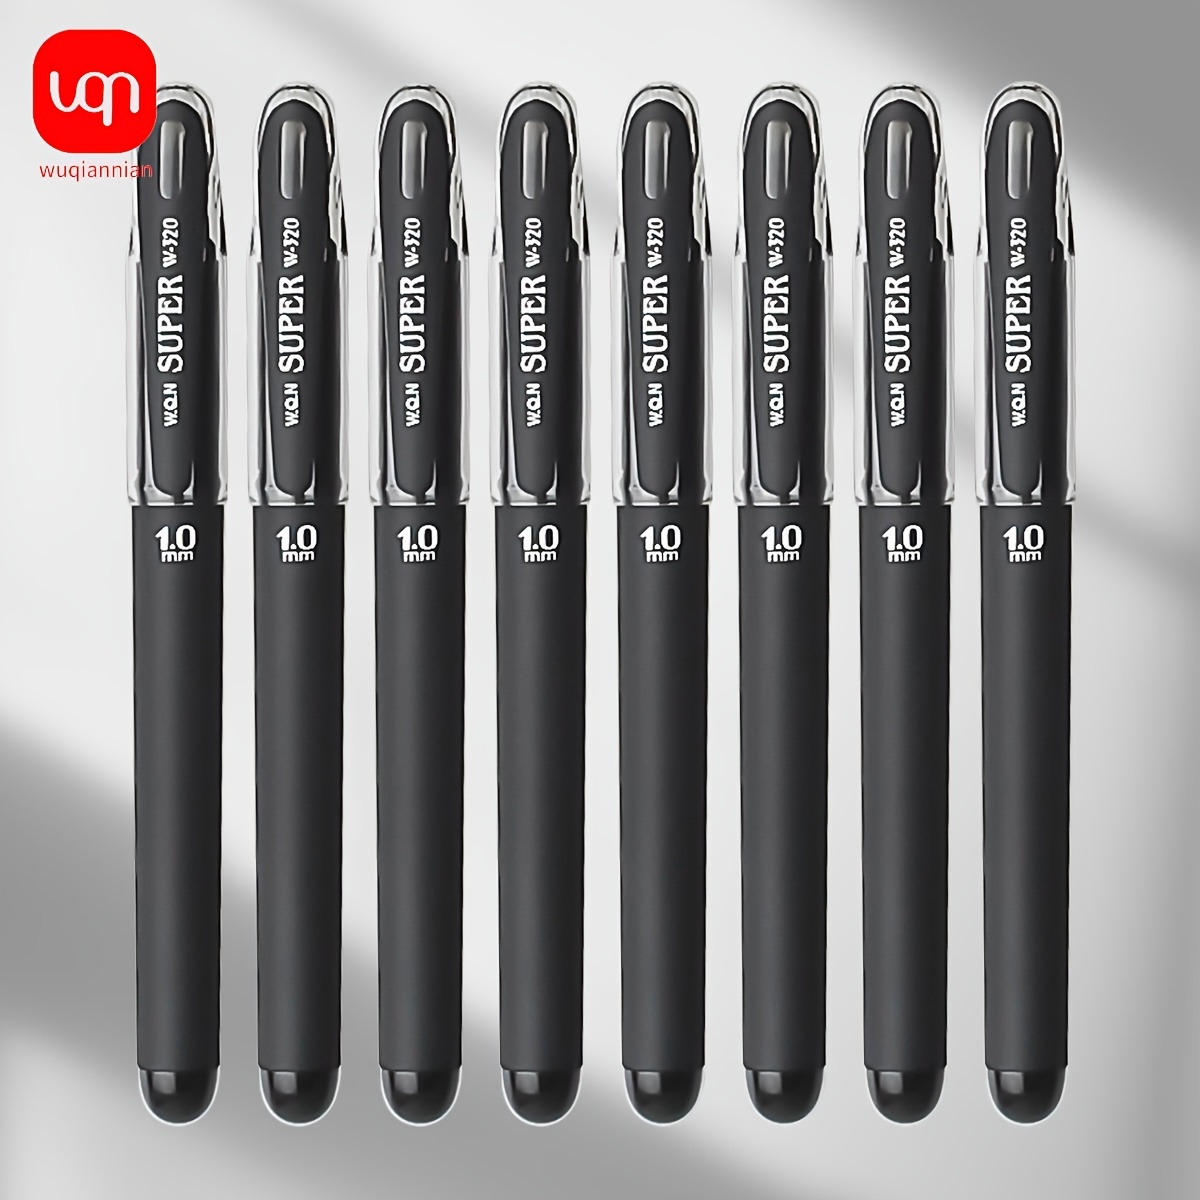 

4pcs/8pcs/12pcs Gel Pen, 1.0mm Gel Pen, Writing Gel Pen, Office And School Stationery Supplies